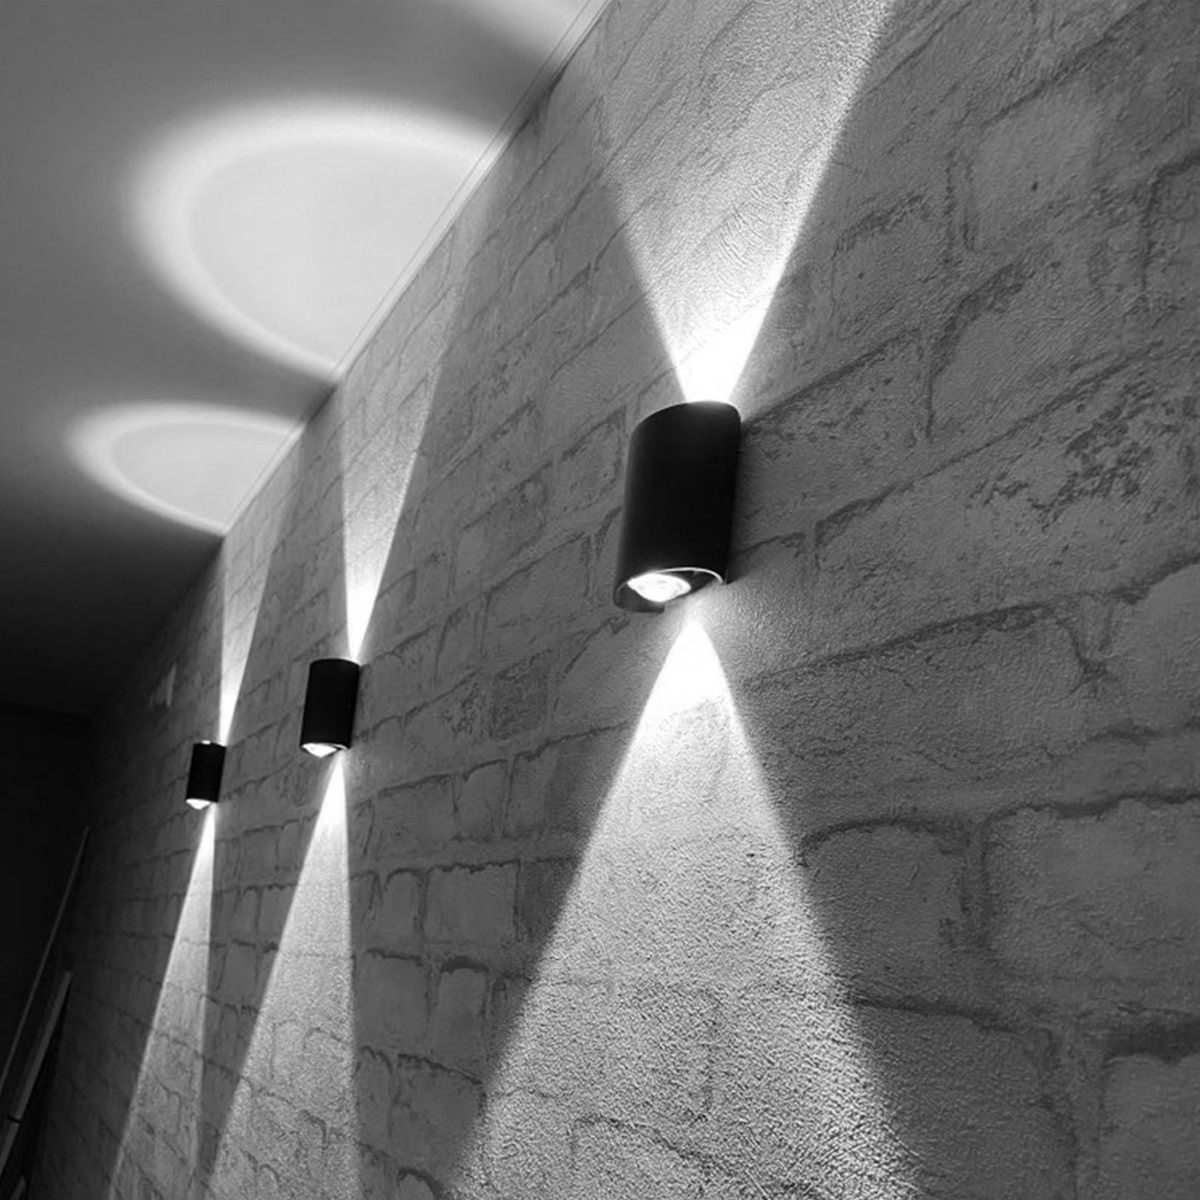 Lampe extérieure murale LED imperméable éclairage haut et bas présentée sur un mur gris extérieur